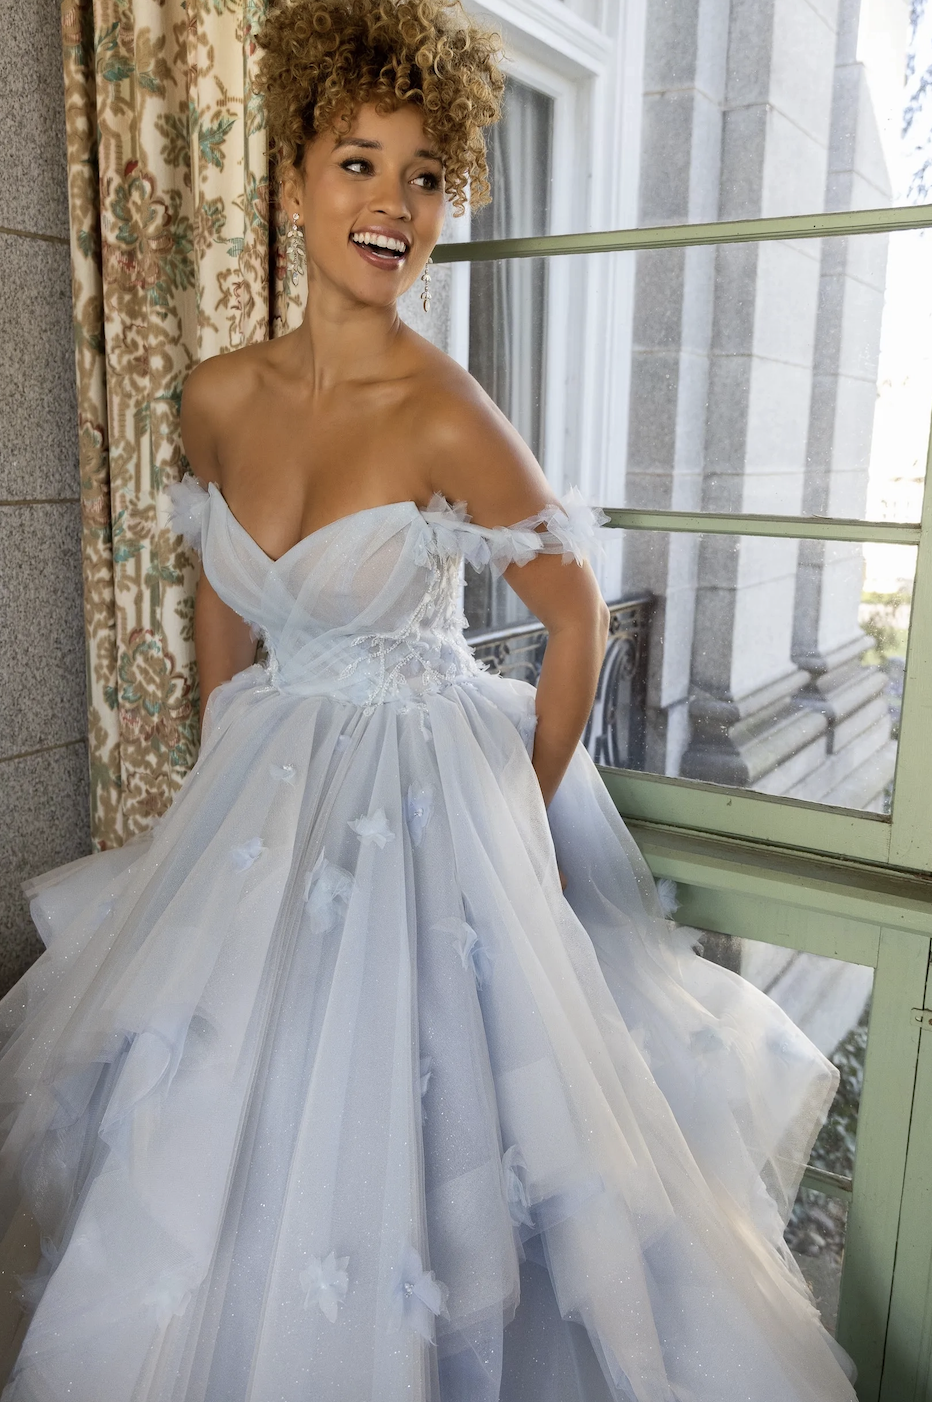 Model wearing Effie Blue wedding dress from Randy Fenoli